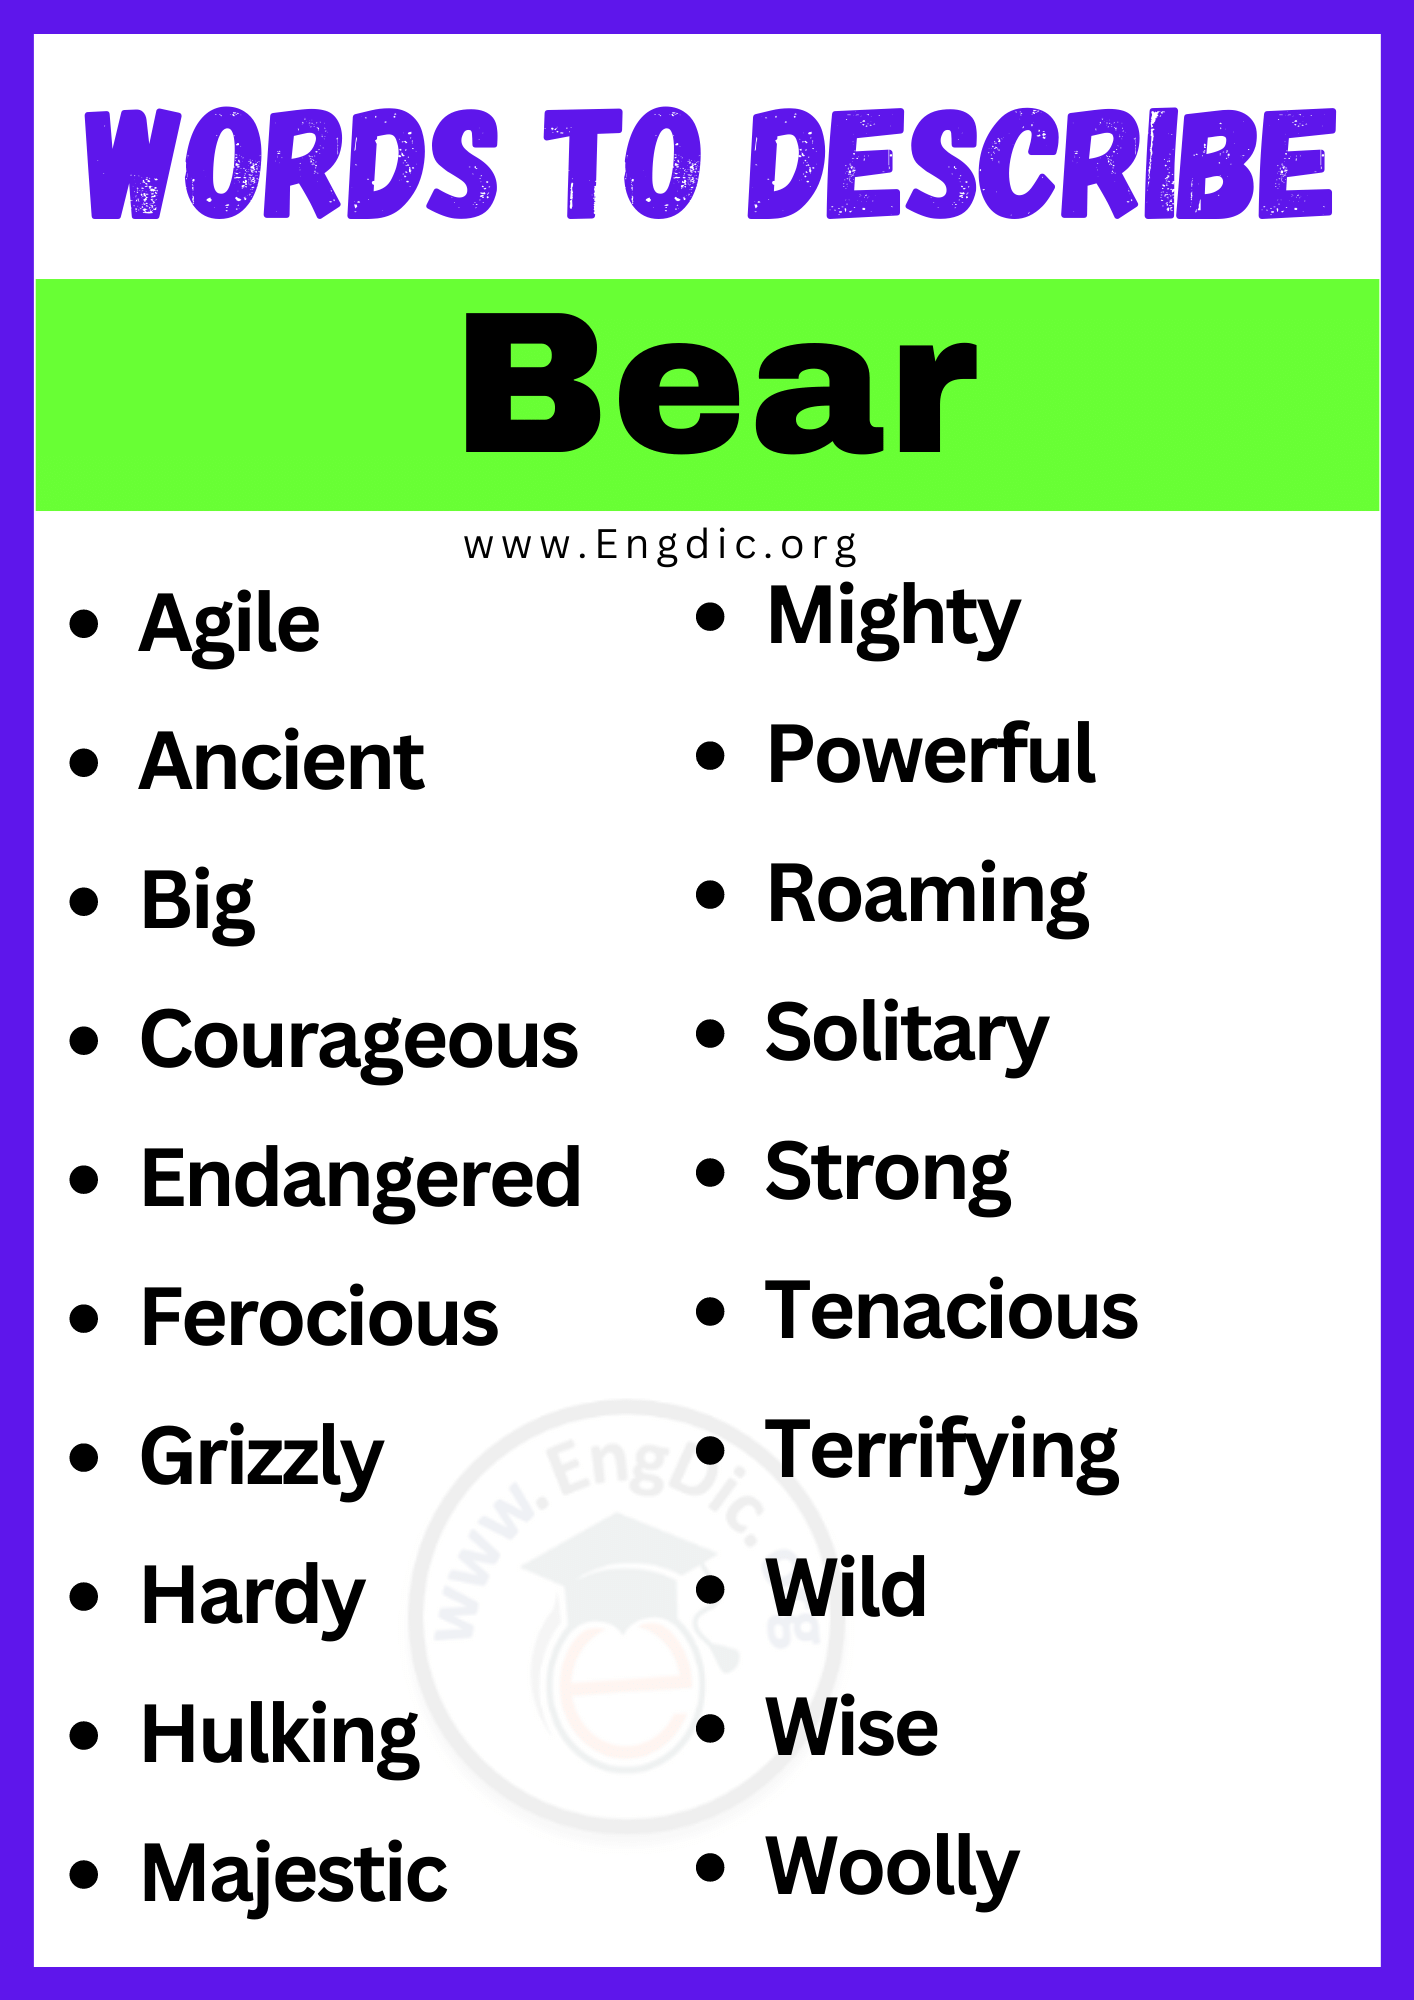 Words to Describe Bear